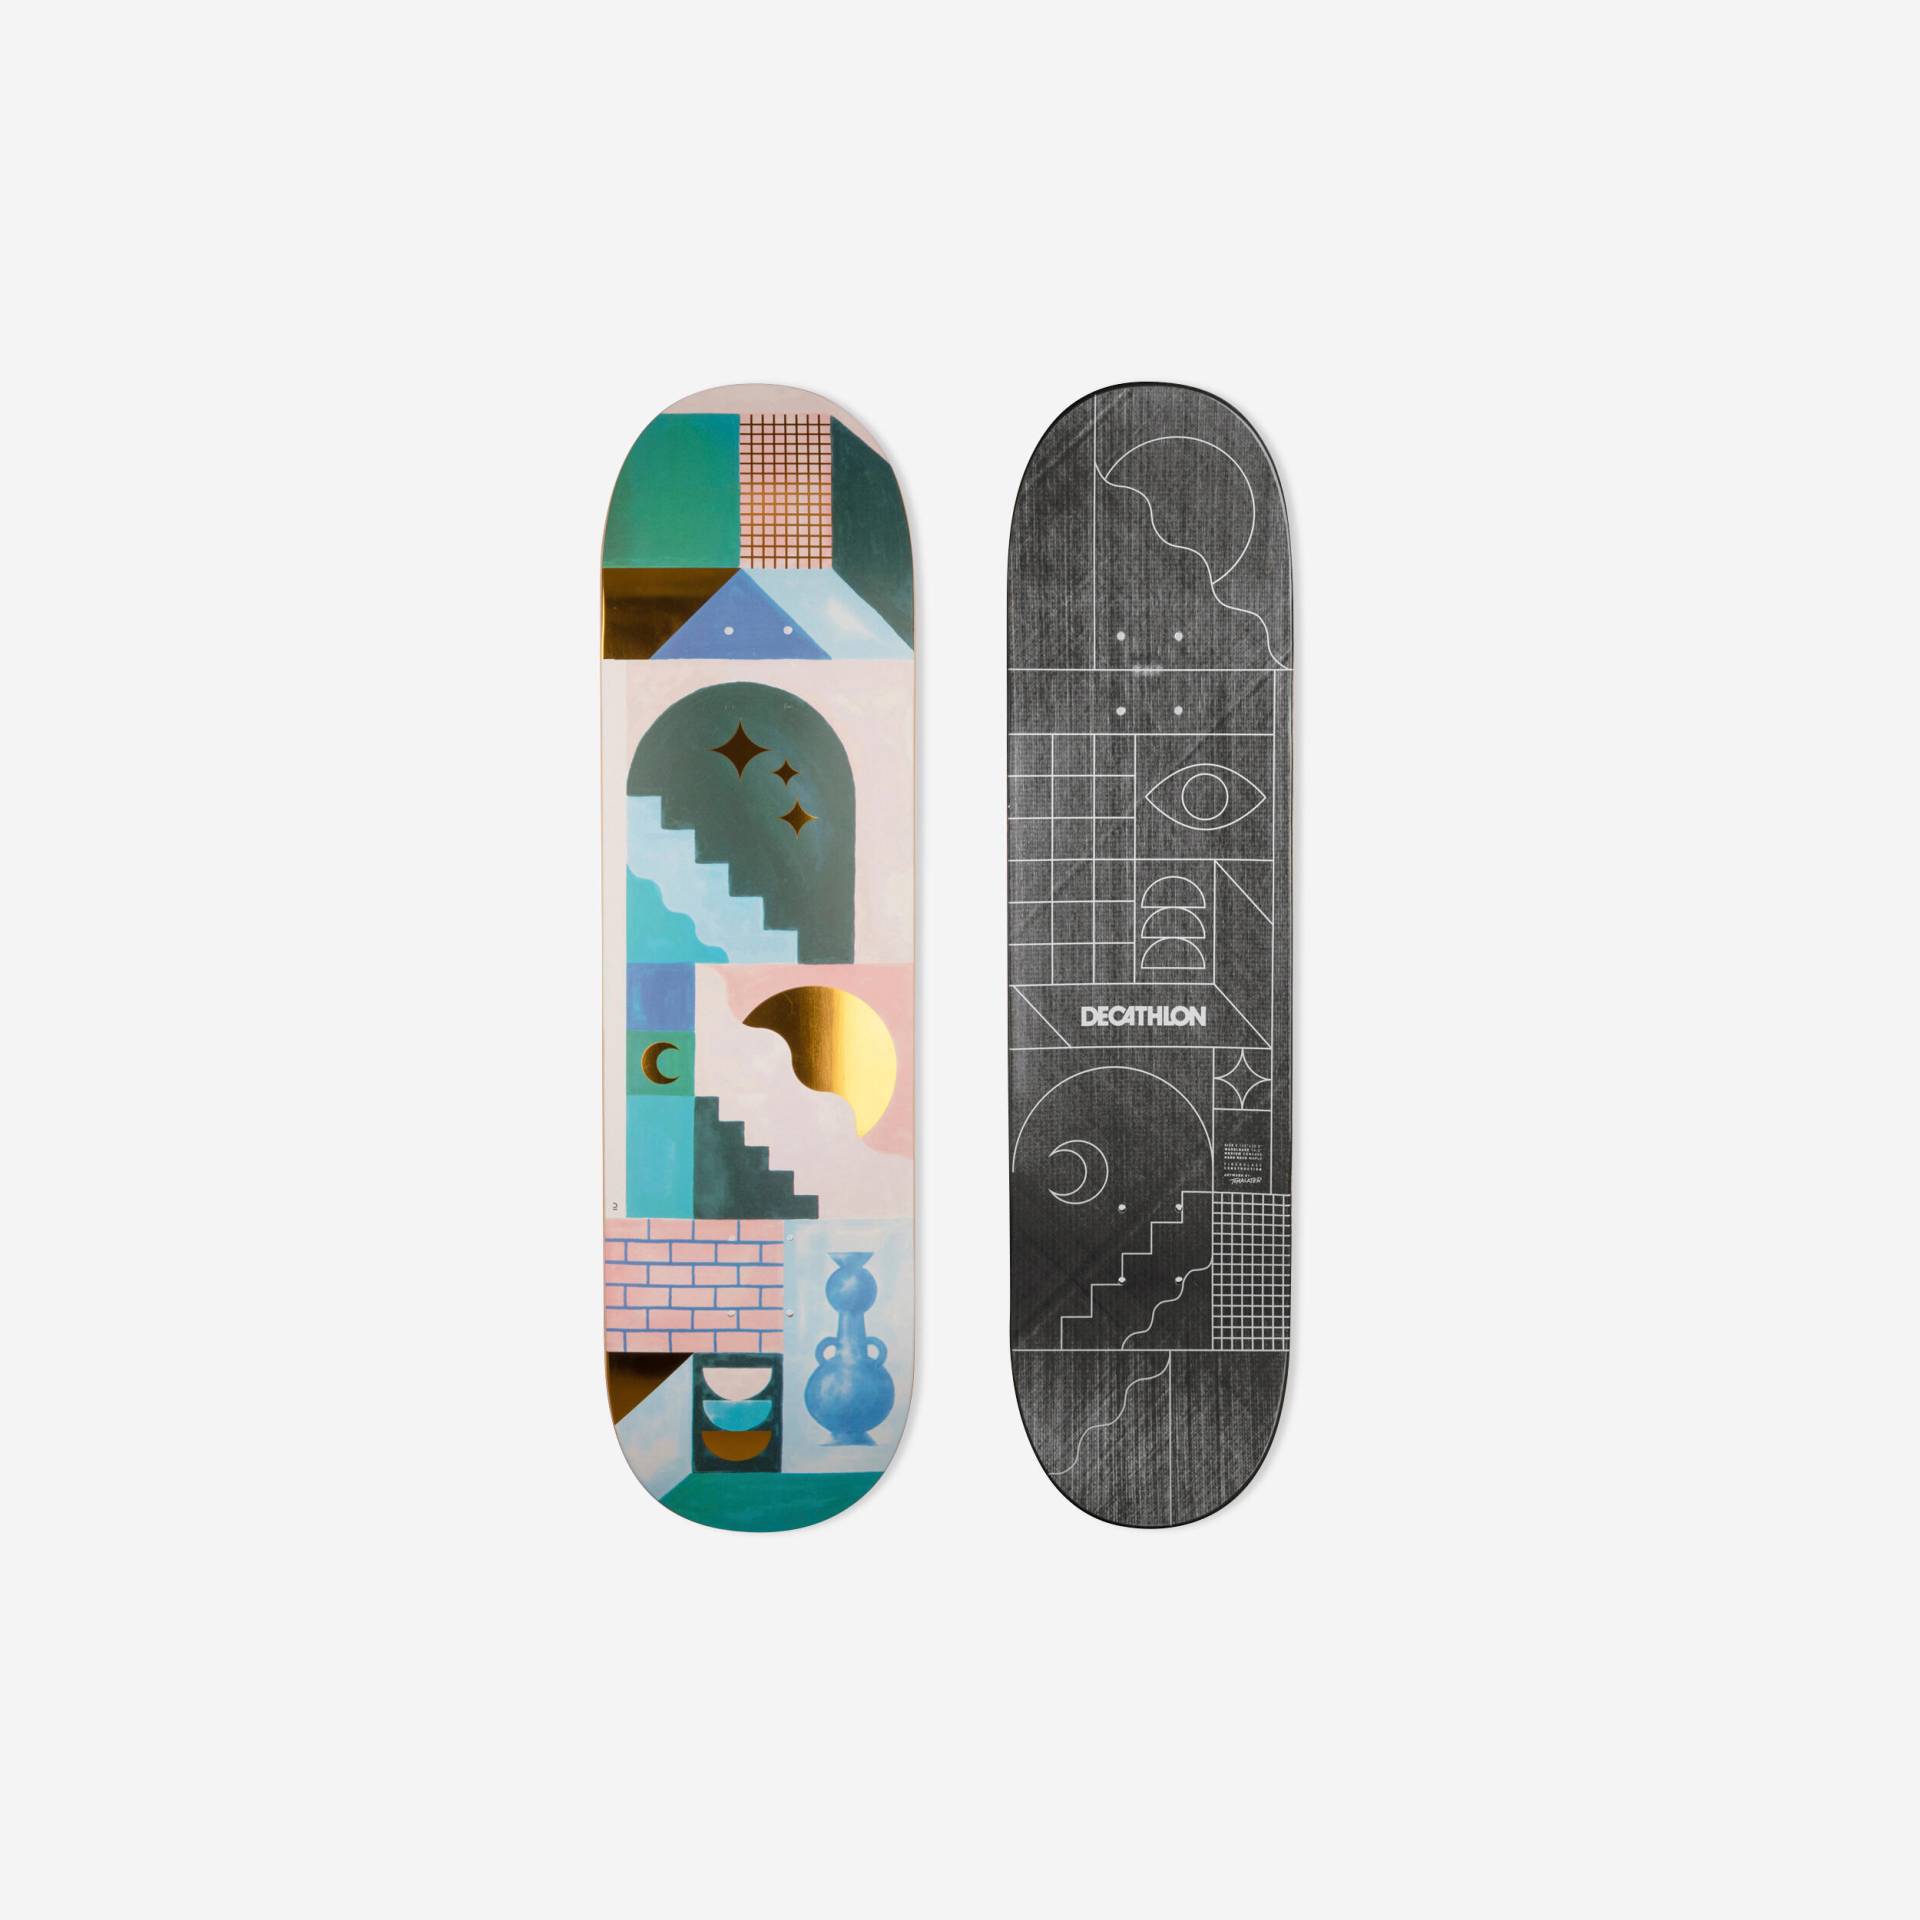 Skateboard Deck Composite 8,75" - DK900 FGC by Tomalater von Decathlon